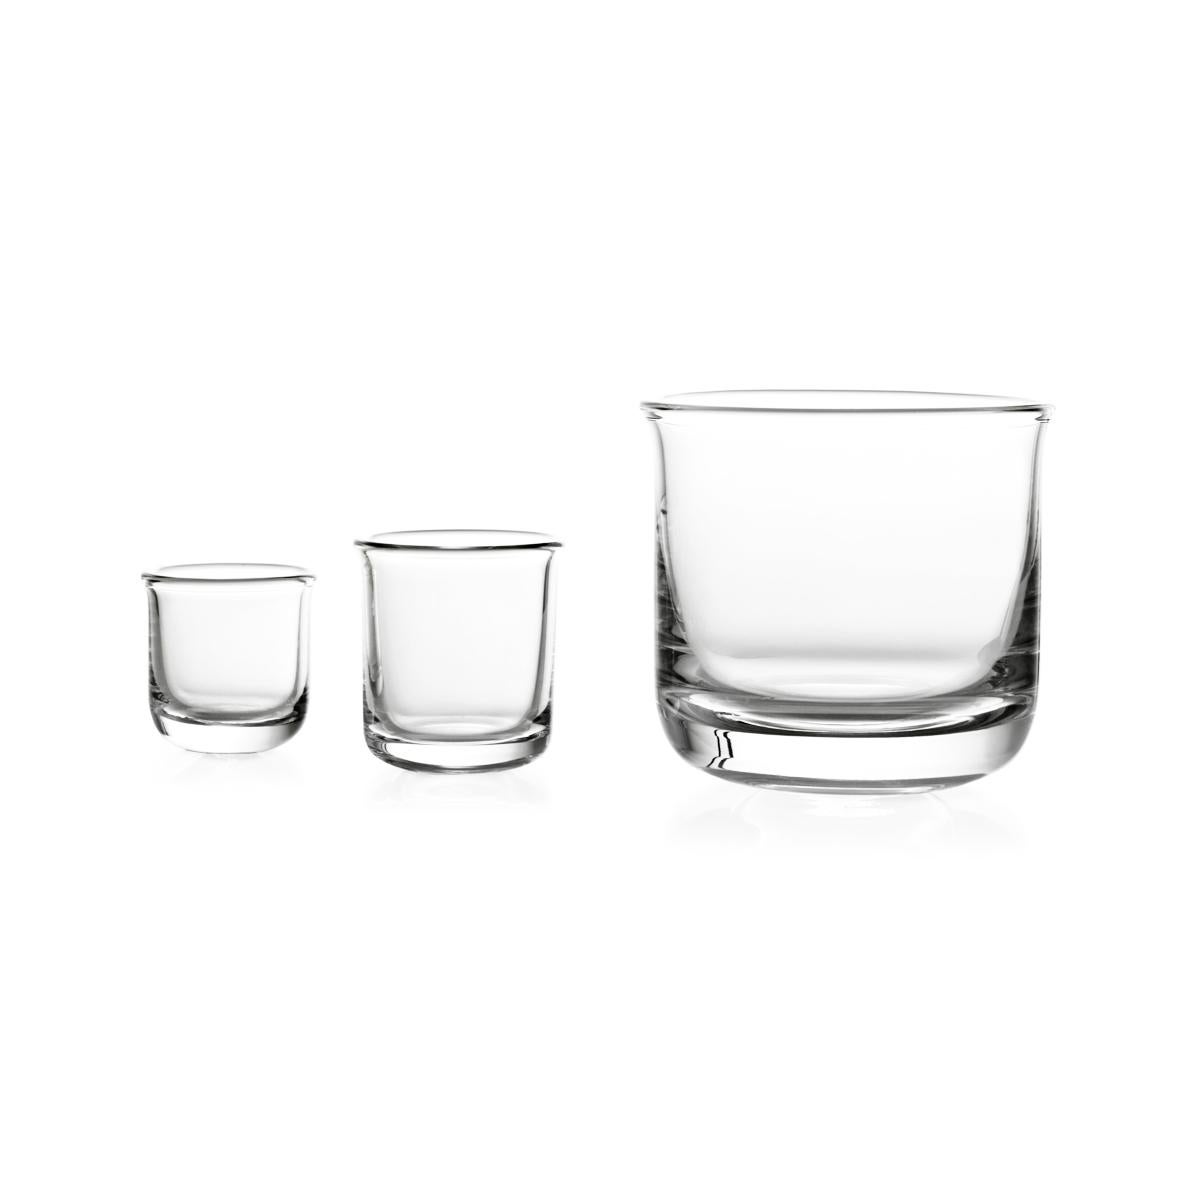 Likörglas aus geblasenem Glas in einer Form. Die Kollektion Aldo ist eine Familie von Gläsern für die Verkostung von Likören. Die handliche und leicht ausgestellte Form ermöglicht es, die Aromen optimal wahrzunehmen, so dass der Moment des Nippens